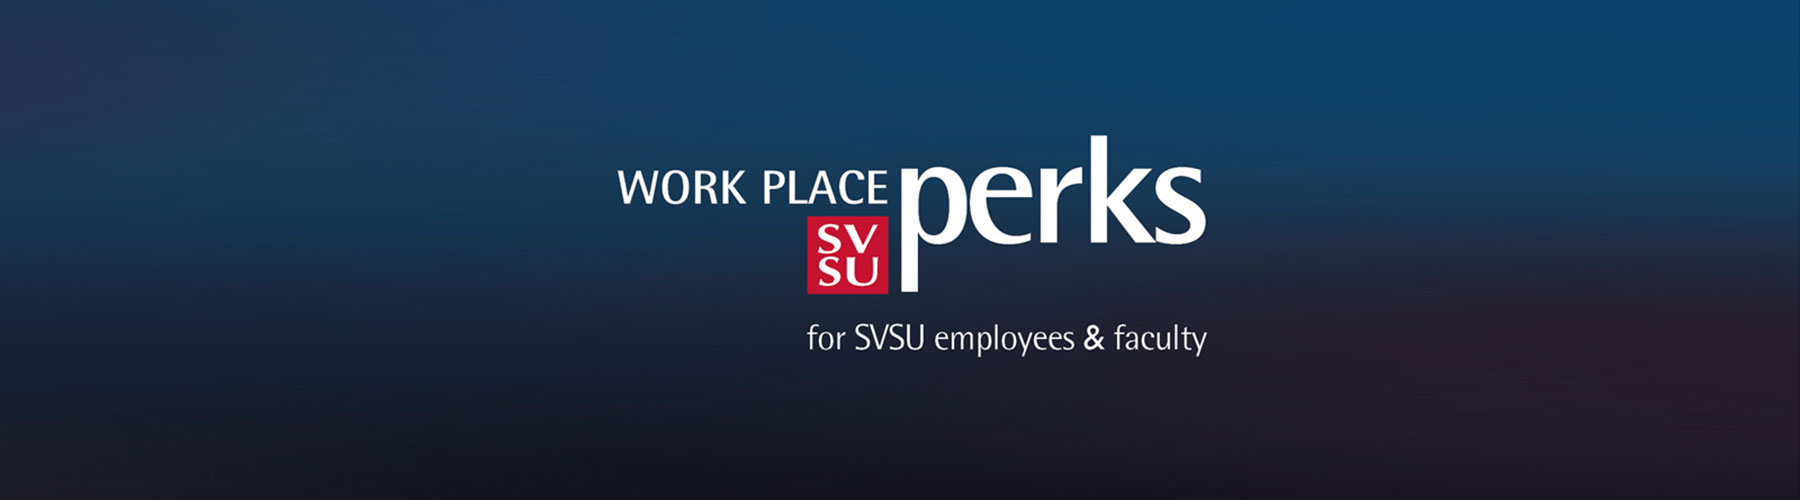 Workplace Perks Hero Image